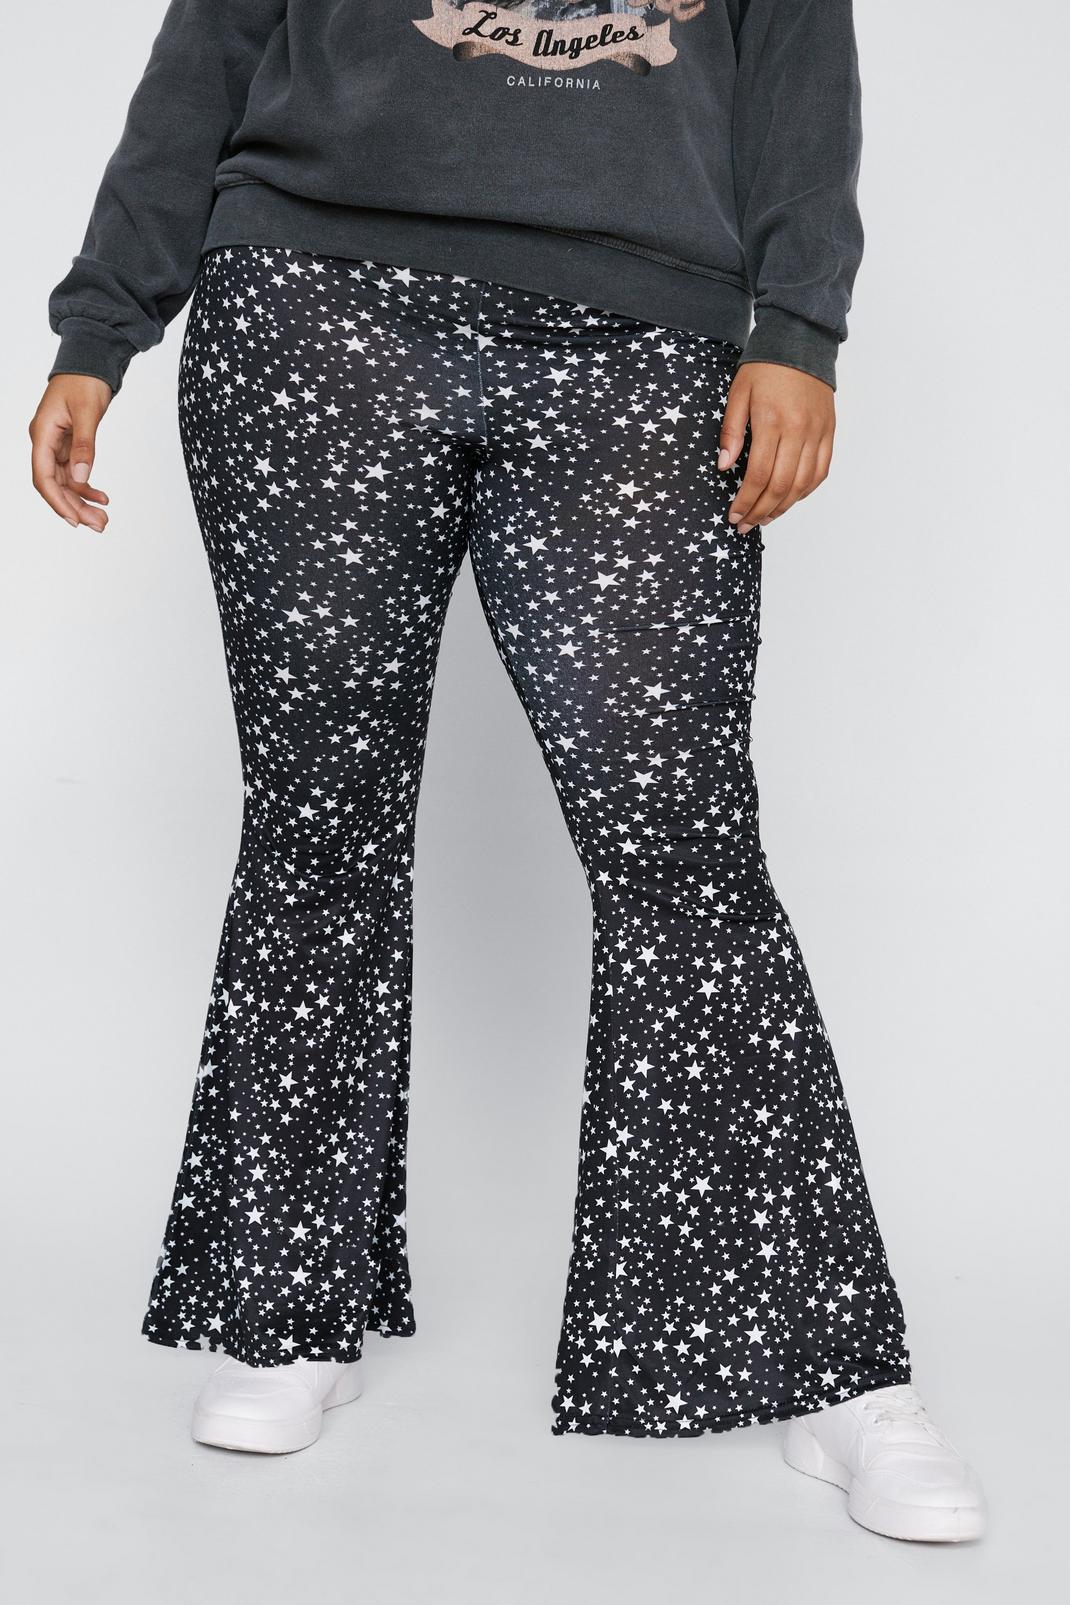 Grande Taille - Pantalon imprimé étoiles recyclées, 808 image number 2